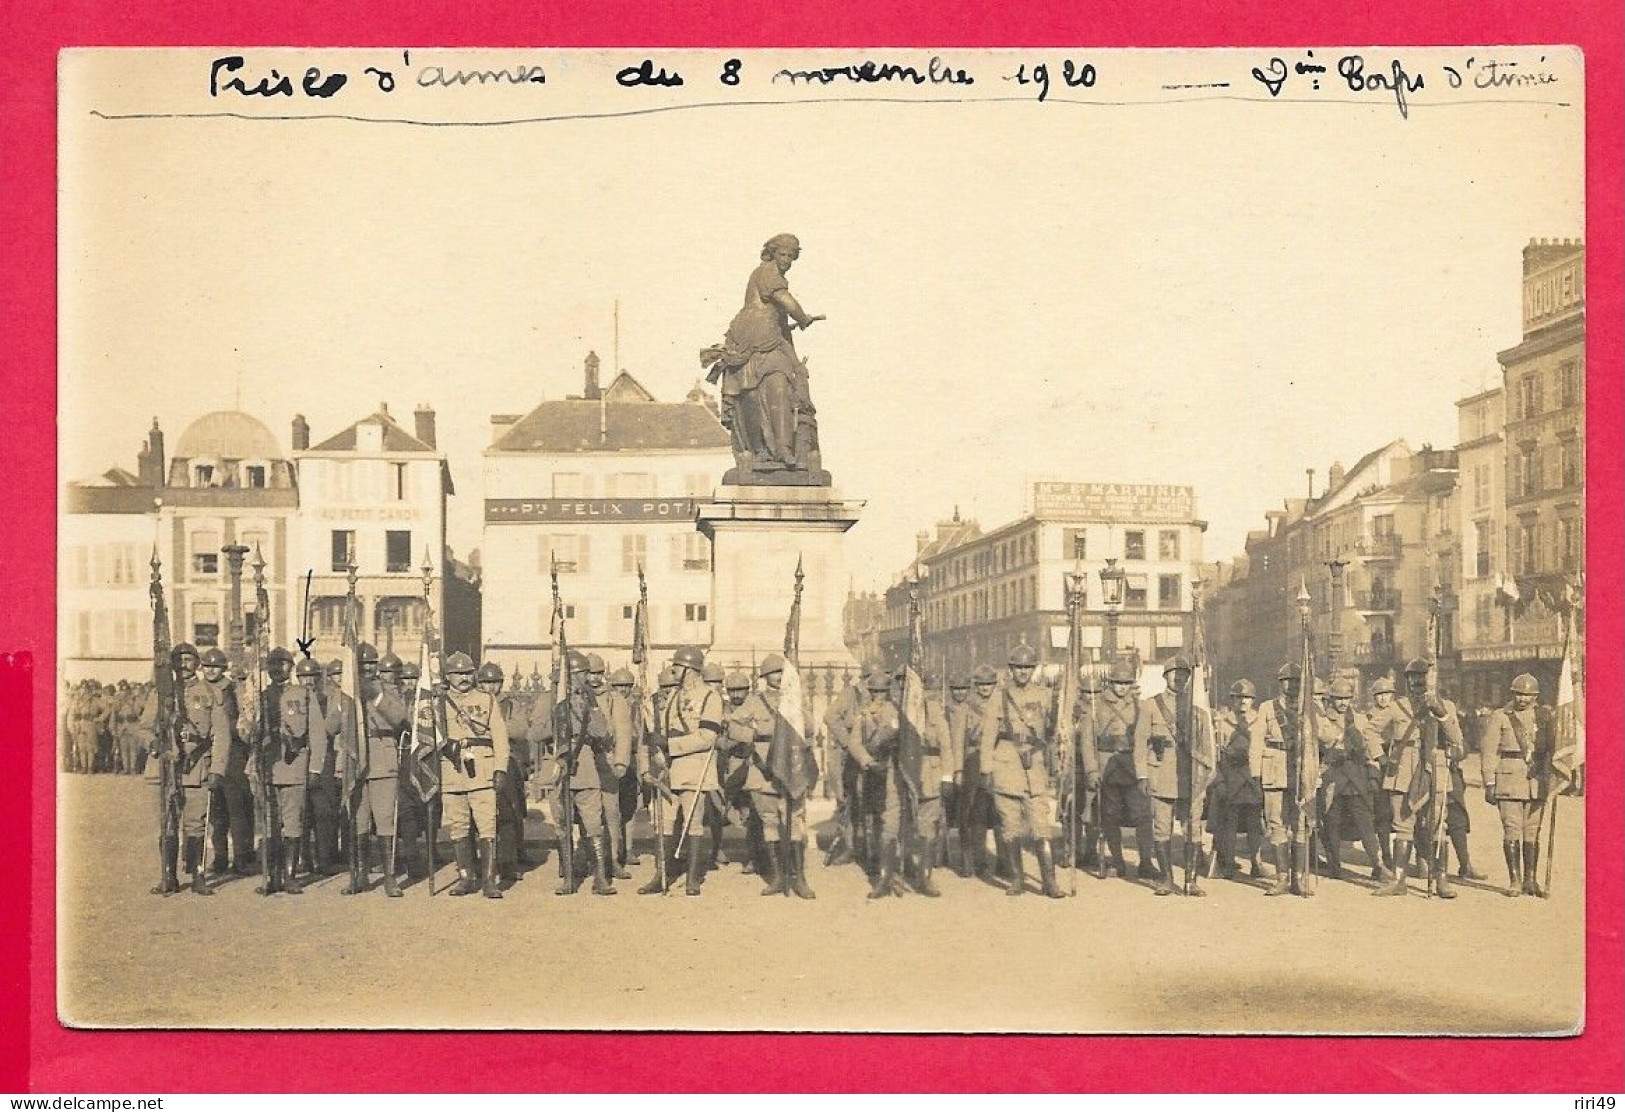 Cpa Beauvais, Prise D'armes 8 Novembre 1920 2 Corps D'Armée, Voir Scannes, 51 RI 2me Compagnie - Regimente